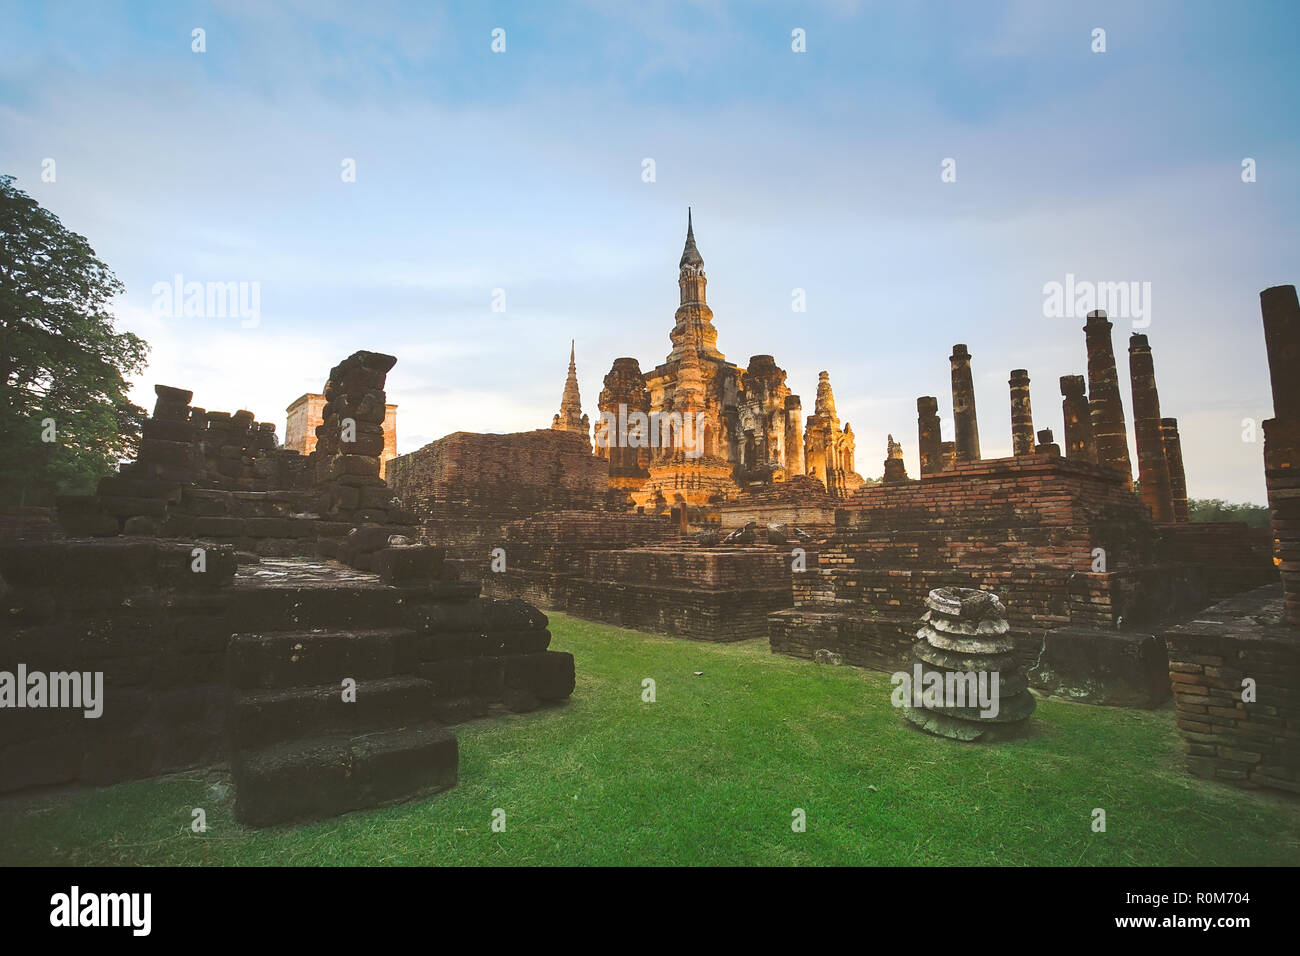 Ruines antiques Wat Mahathat dans le parc historique de Sukhothai, Thaïlande, province de Sukhothai Banque D'Images